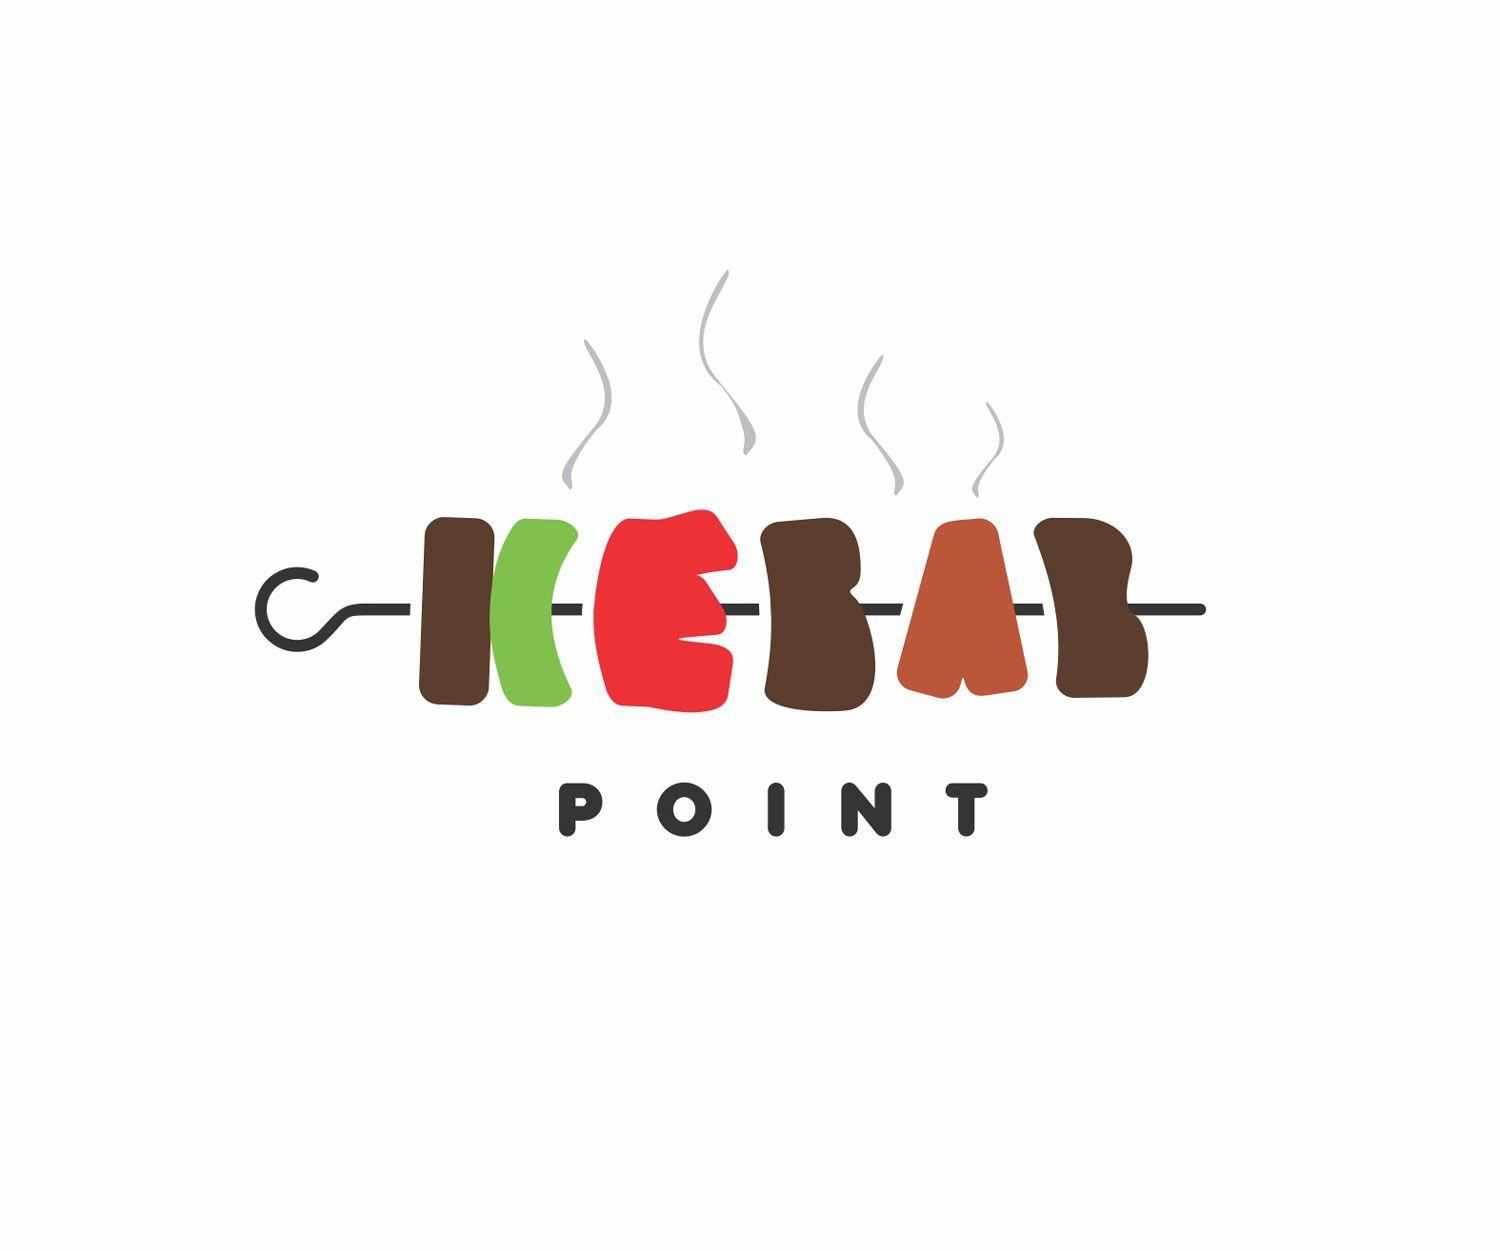 Kabab Logo - Elegant, Playful, Fast Food Restaurant Logo Design for Kebab Point ...